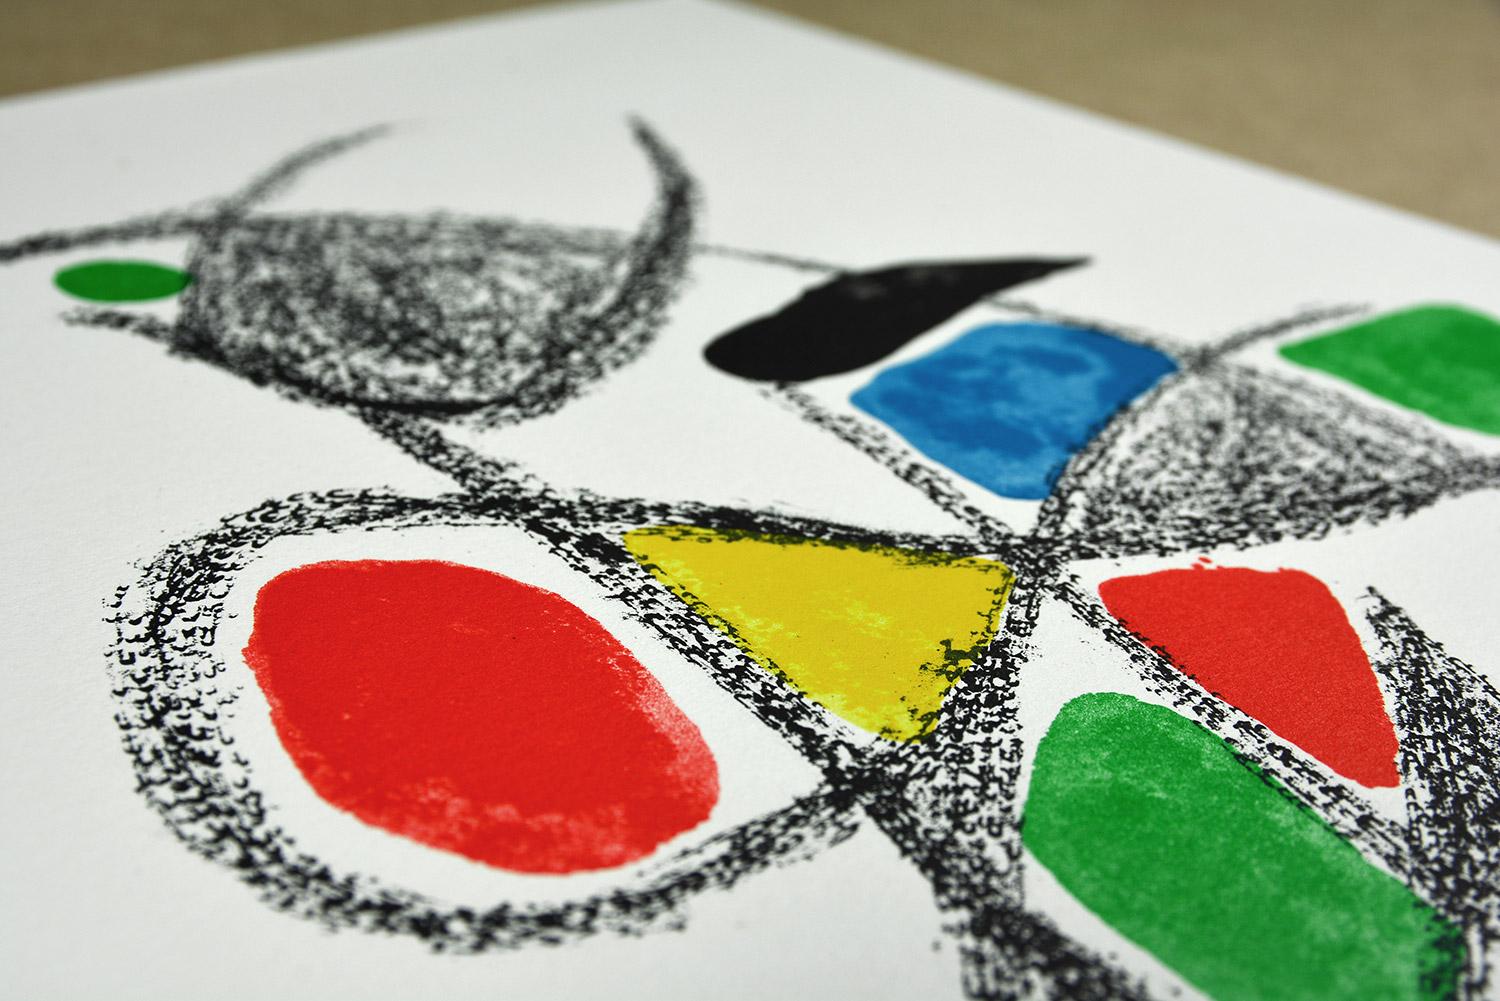 Joan Miró - Maravillas con variaciones acrósticas en el jardín de Miró XVIII
Date of creation: 1975
Medium: Lithograph
Media: Gvarro paper
Edition: 1500
Size: 49,5 x 35,5 cm
Observations: Lithograph on Gvarro paper plate signed. Edited by Polígrafa,